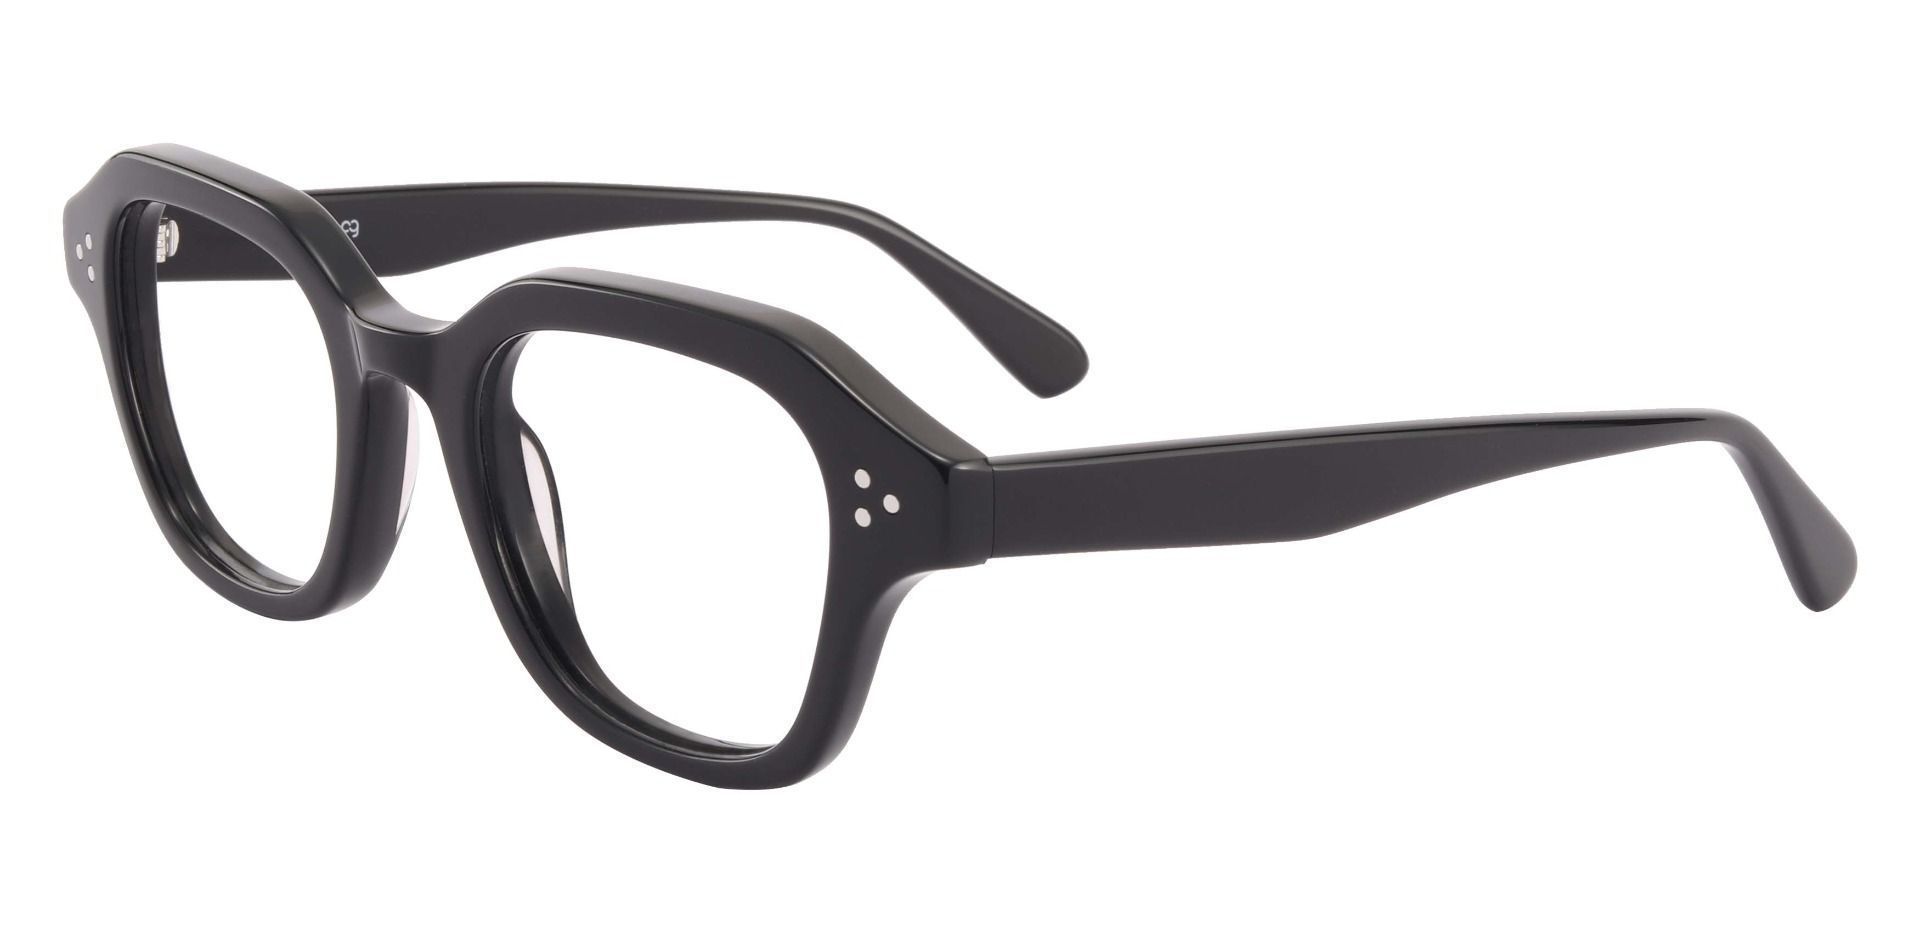 Bowman Square Progressive Glasses - Black